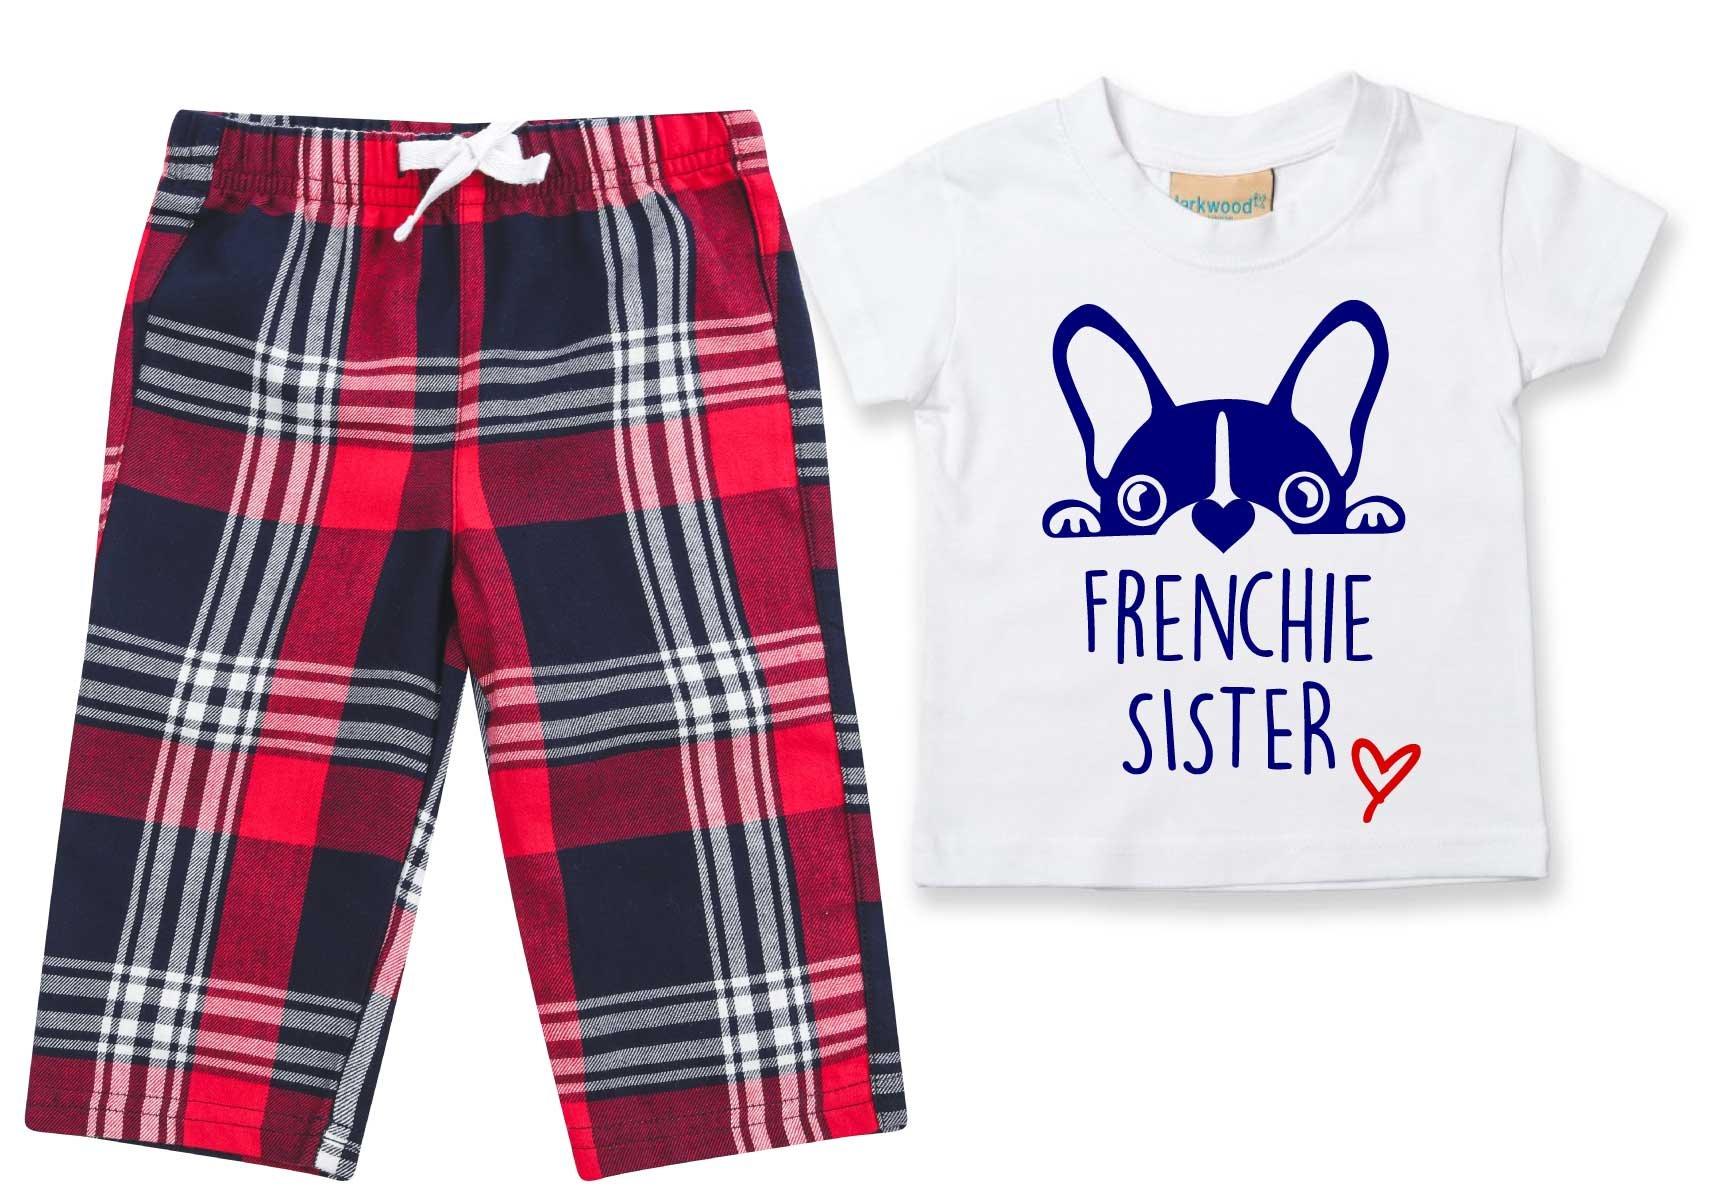 Пижамы Frenchie Sister, детские брюки в клетку, пижамный комплект с французским бульдогом 60 SECOND MAKEOVER, красный